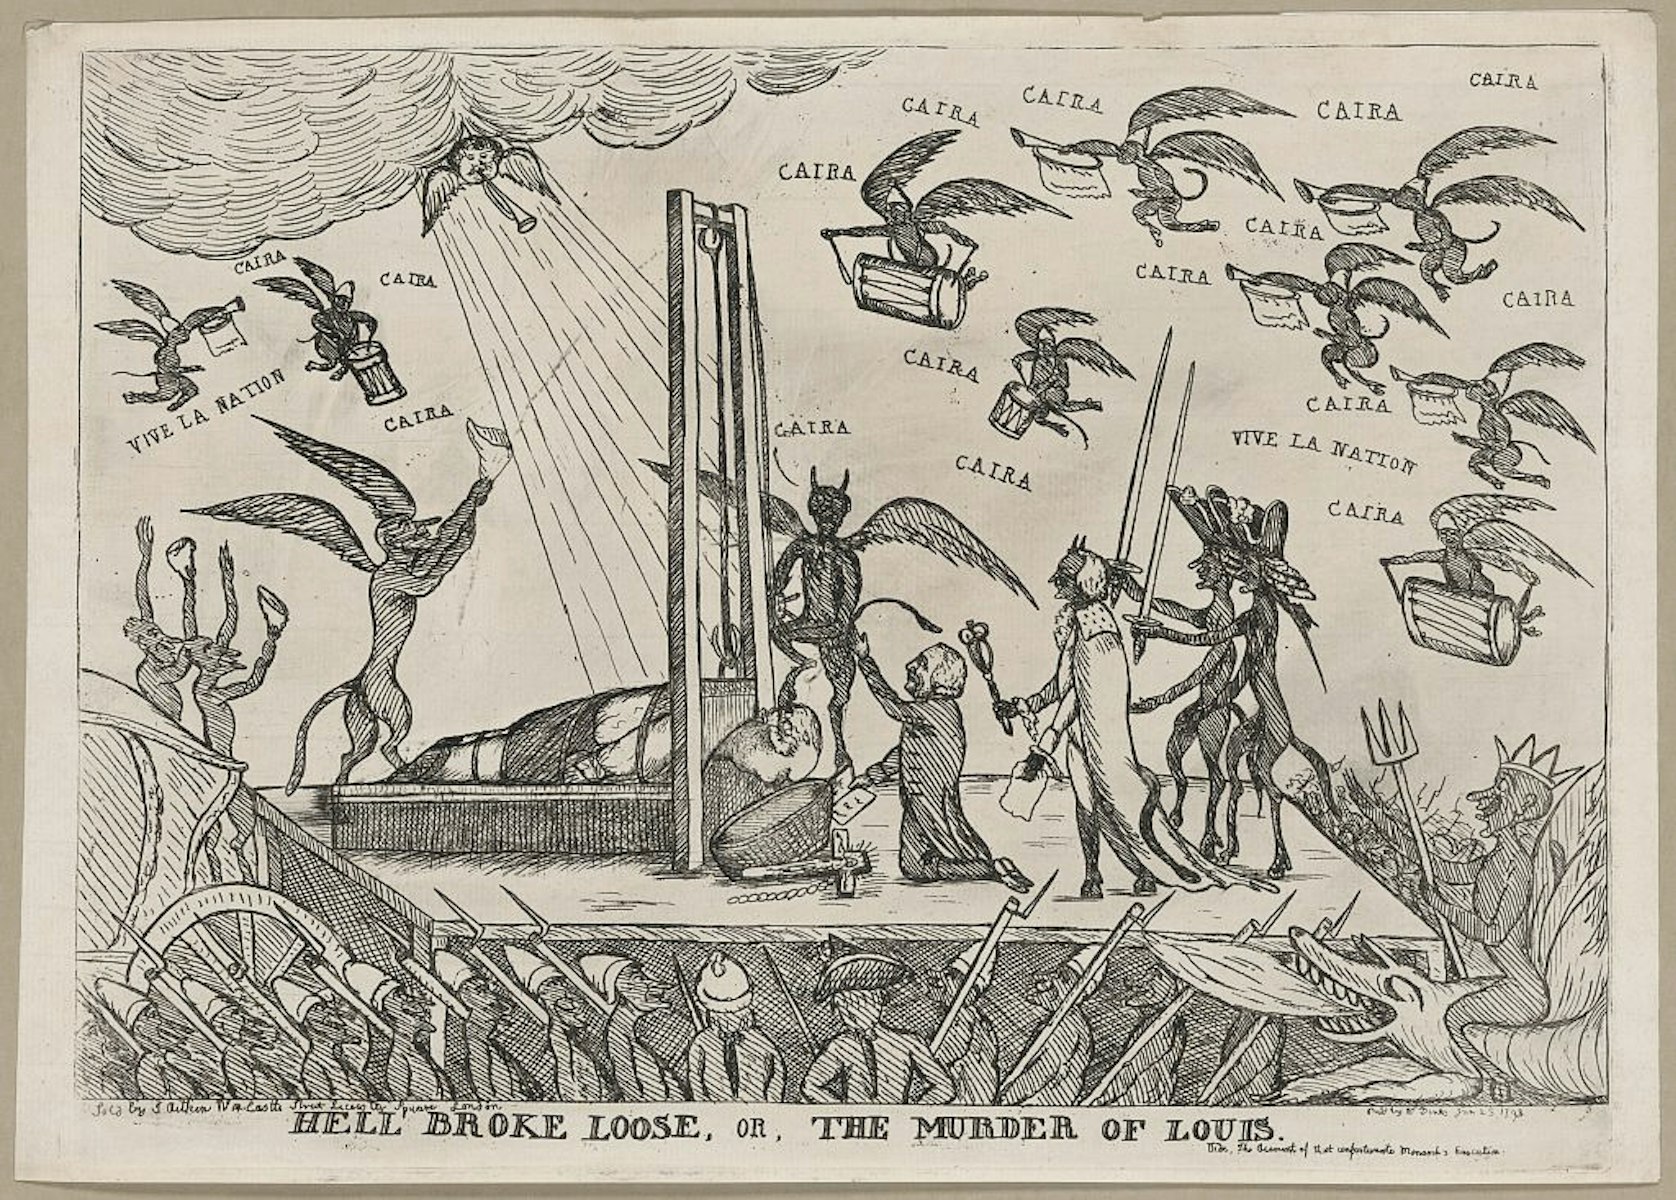 The Execution of Louis XVI, 1793